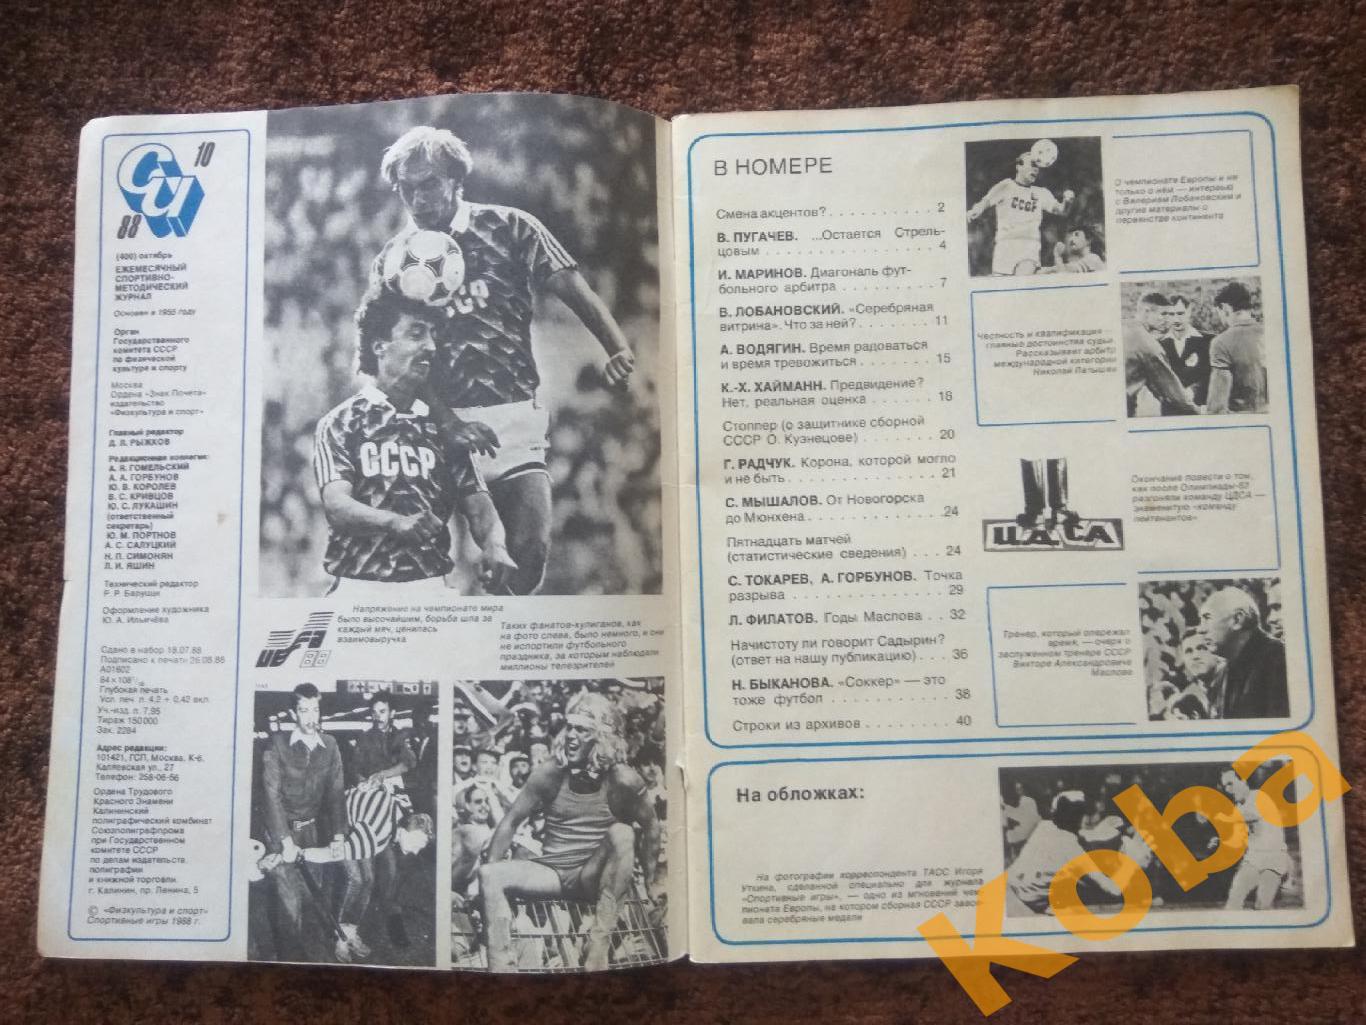 Евро 1988 Лобановский Стрельцов Футбол Голландия Журнал Спортивные игры 1988 №10 7